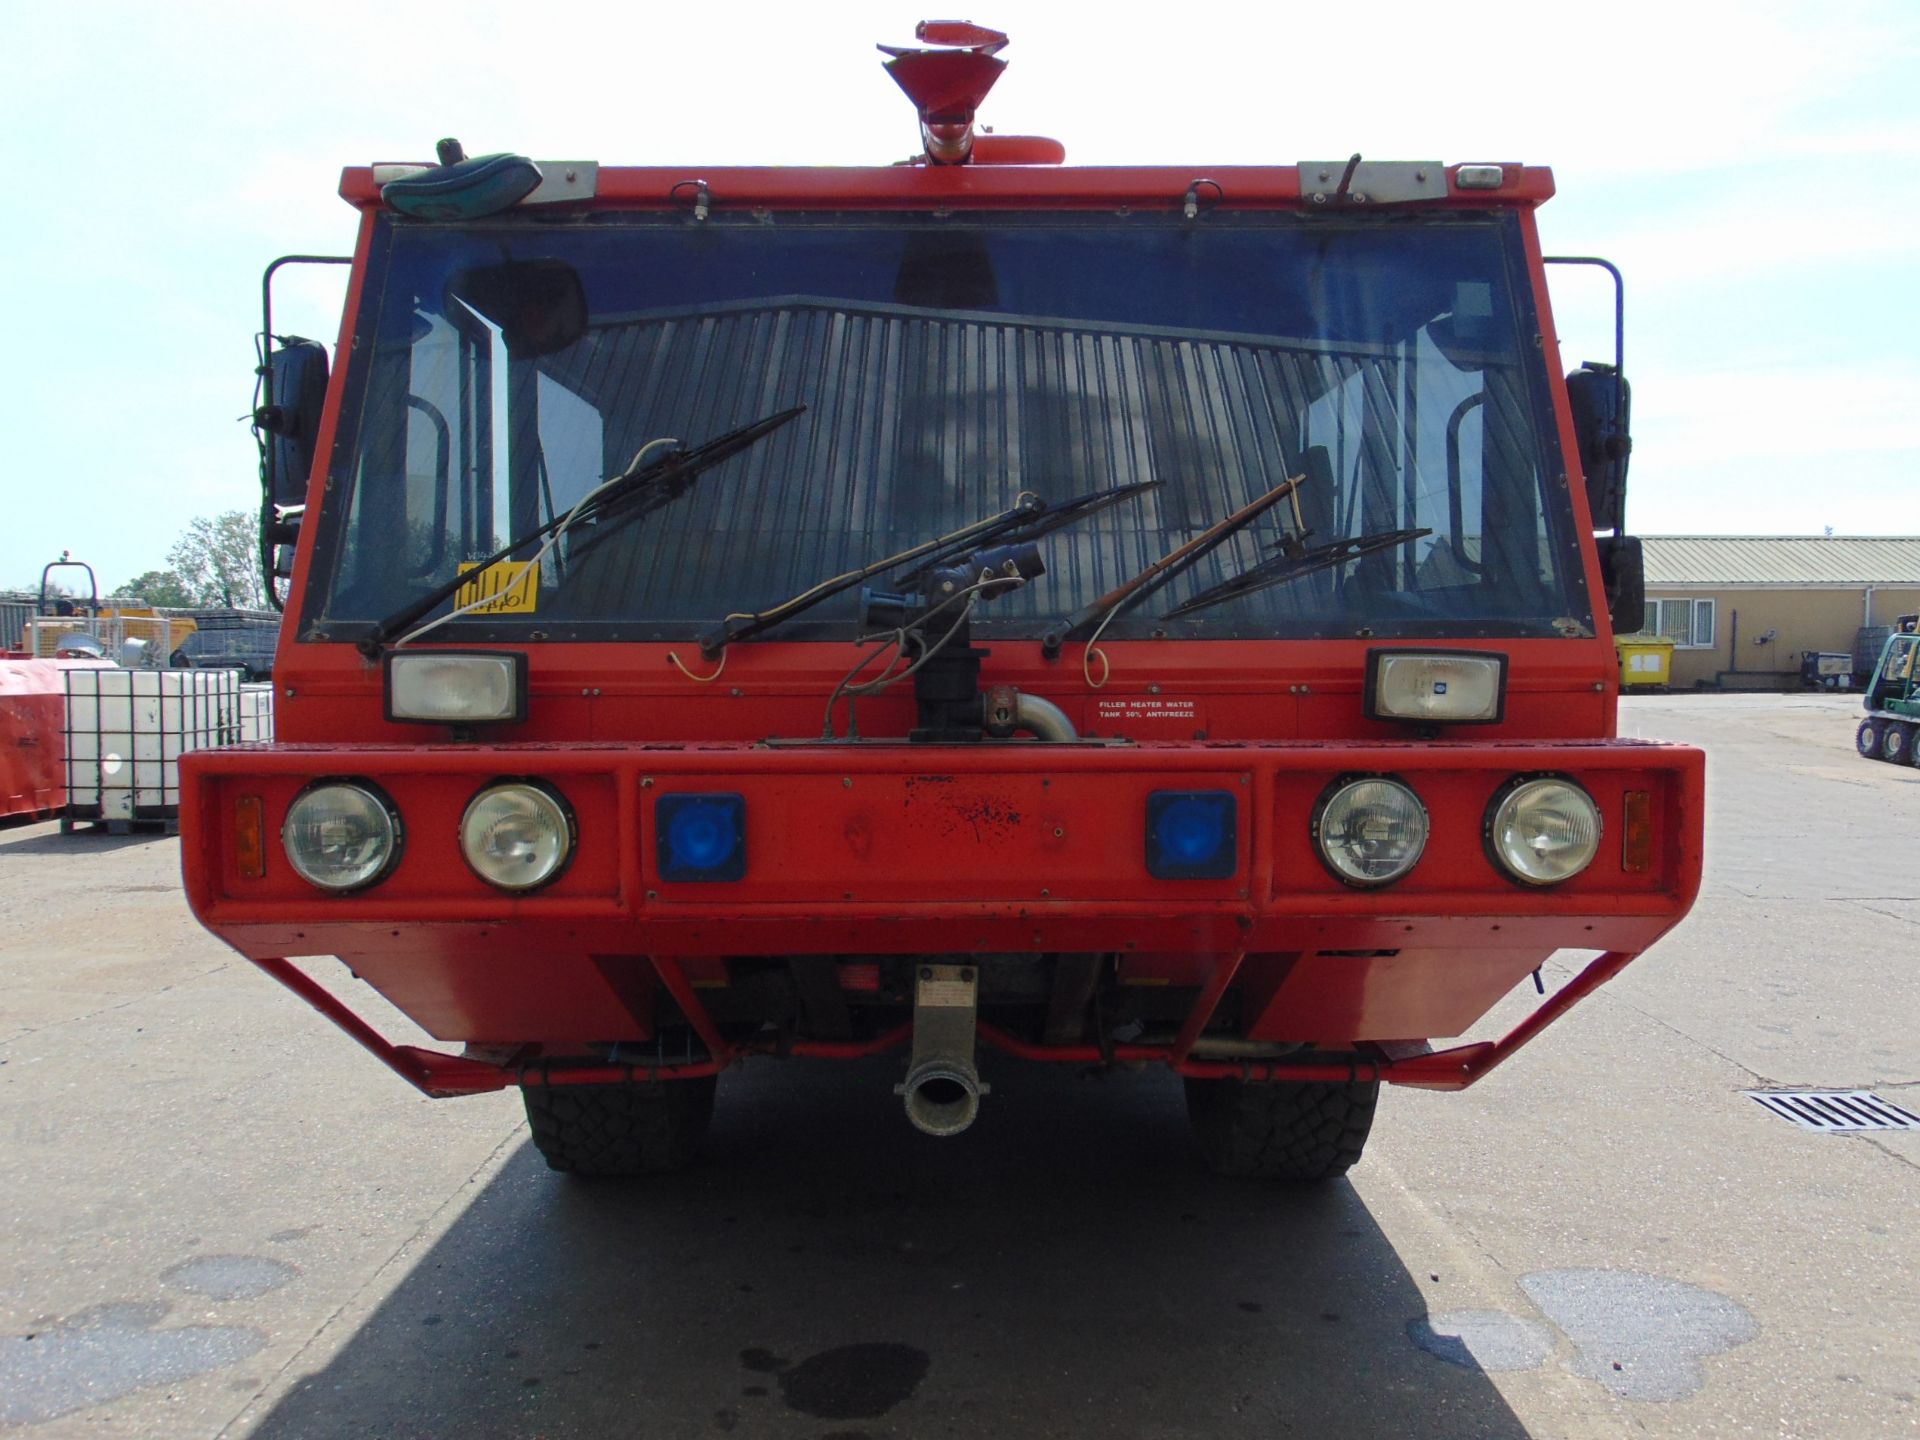 Unipower 4 x 4 Airport Fire Fighting Appliance - Rapid Intervention Vehicle - Bild 5 aus 73